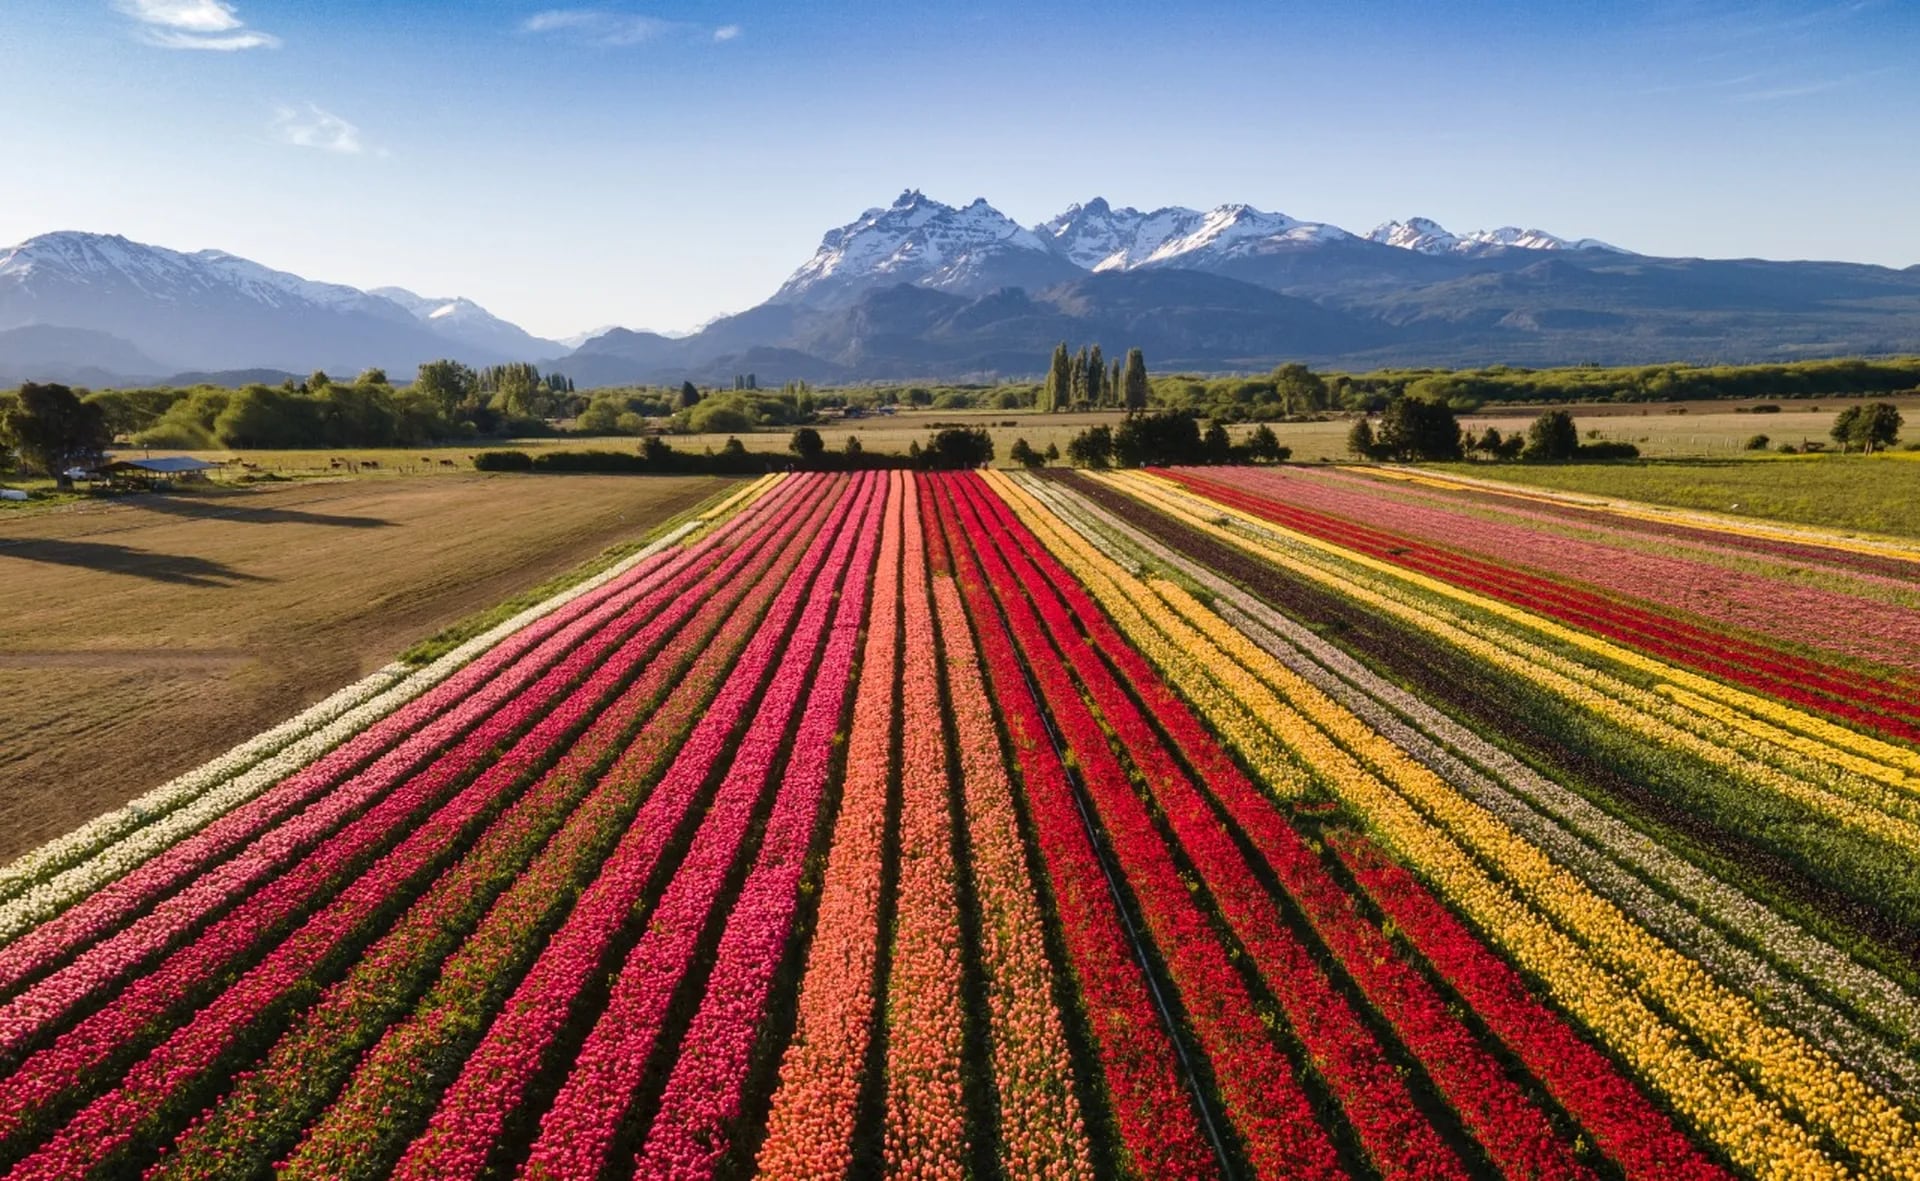 El increíble campo de tulipanes que es un boom turístico - LA NACION